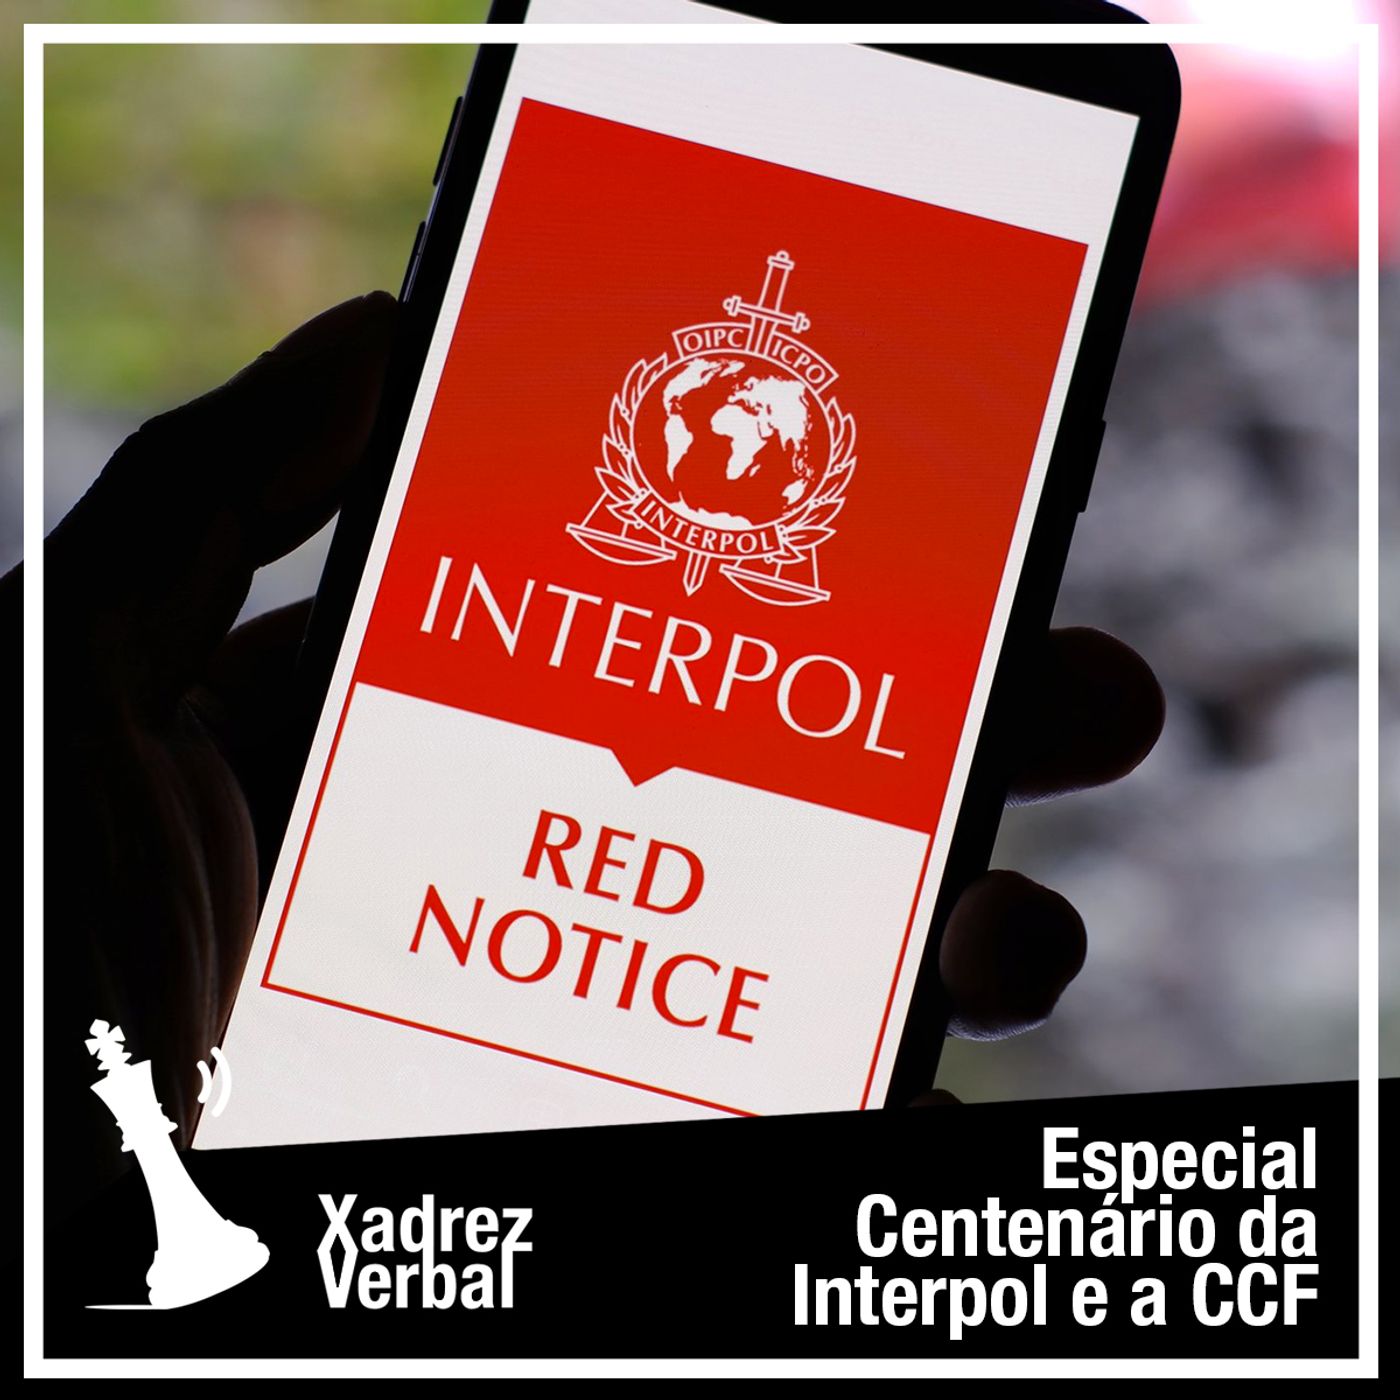 Especial 100 Anos da Interpol